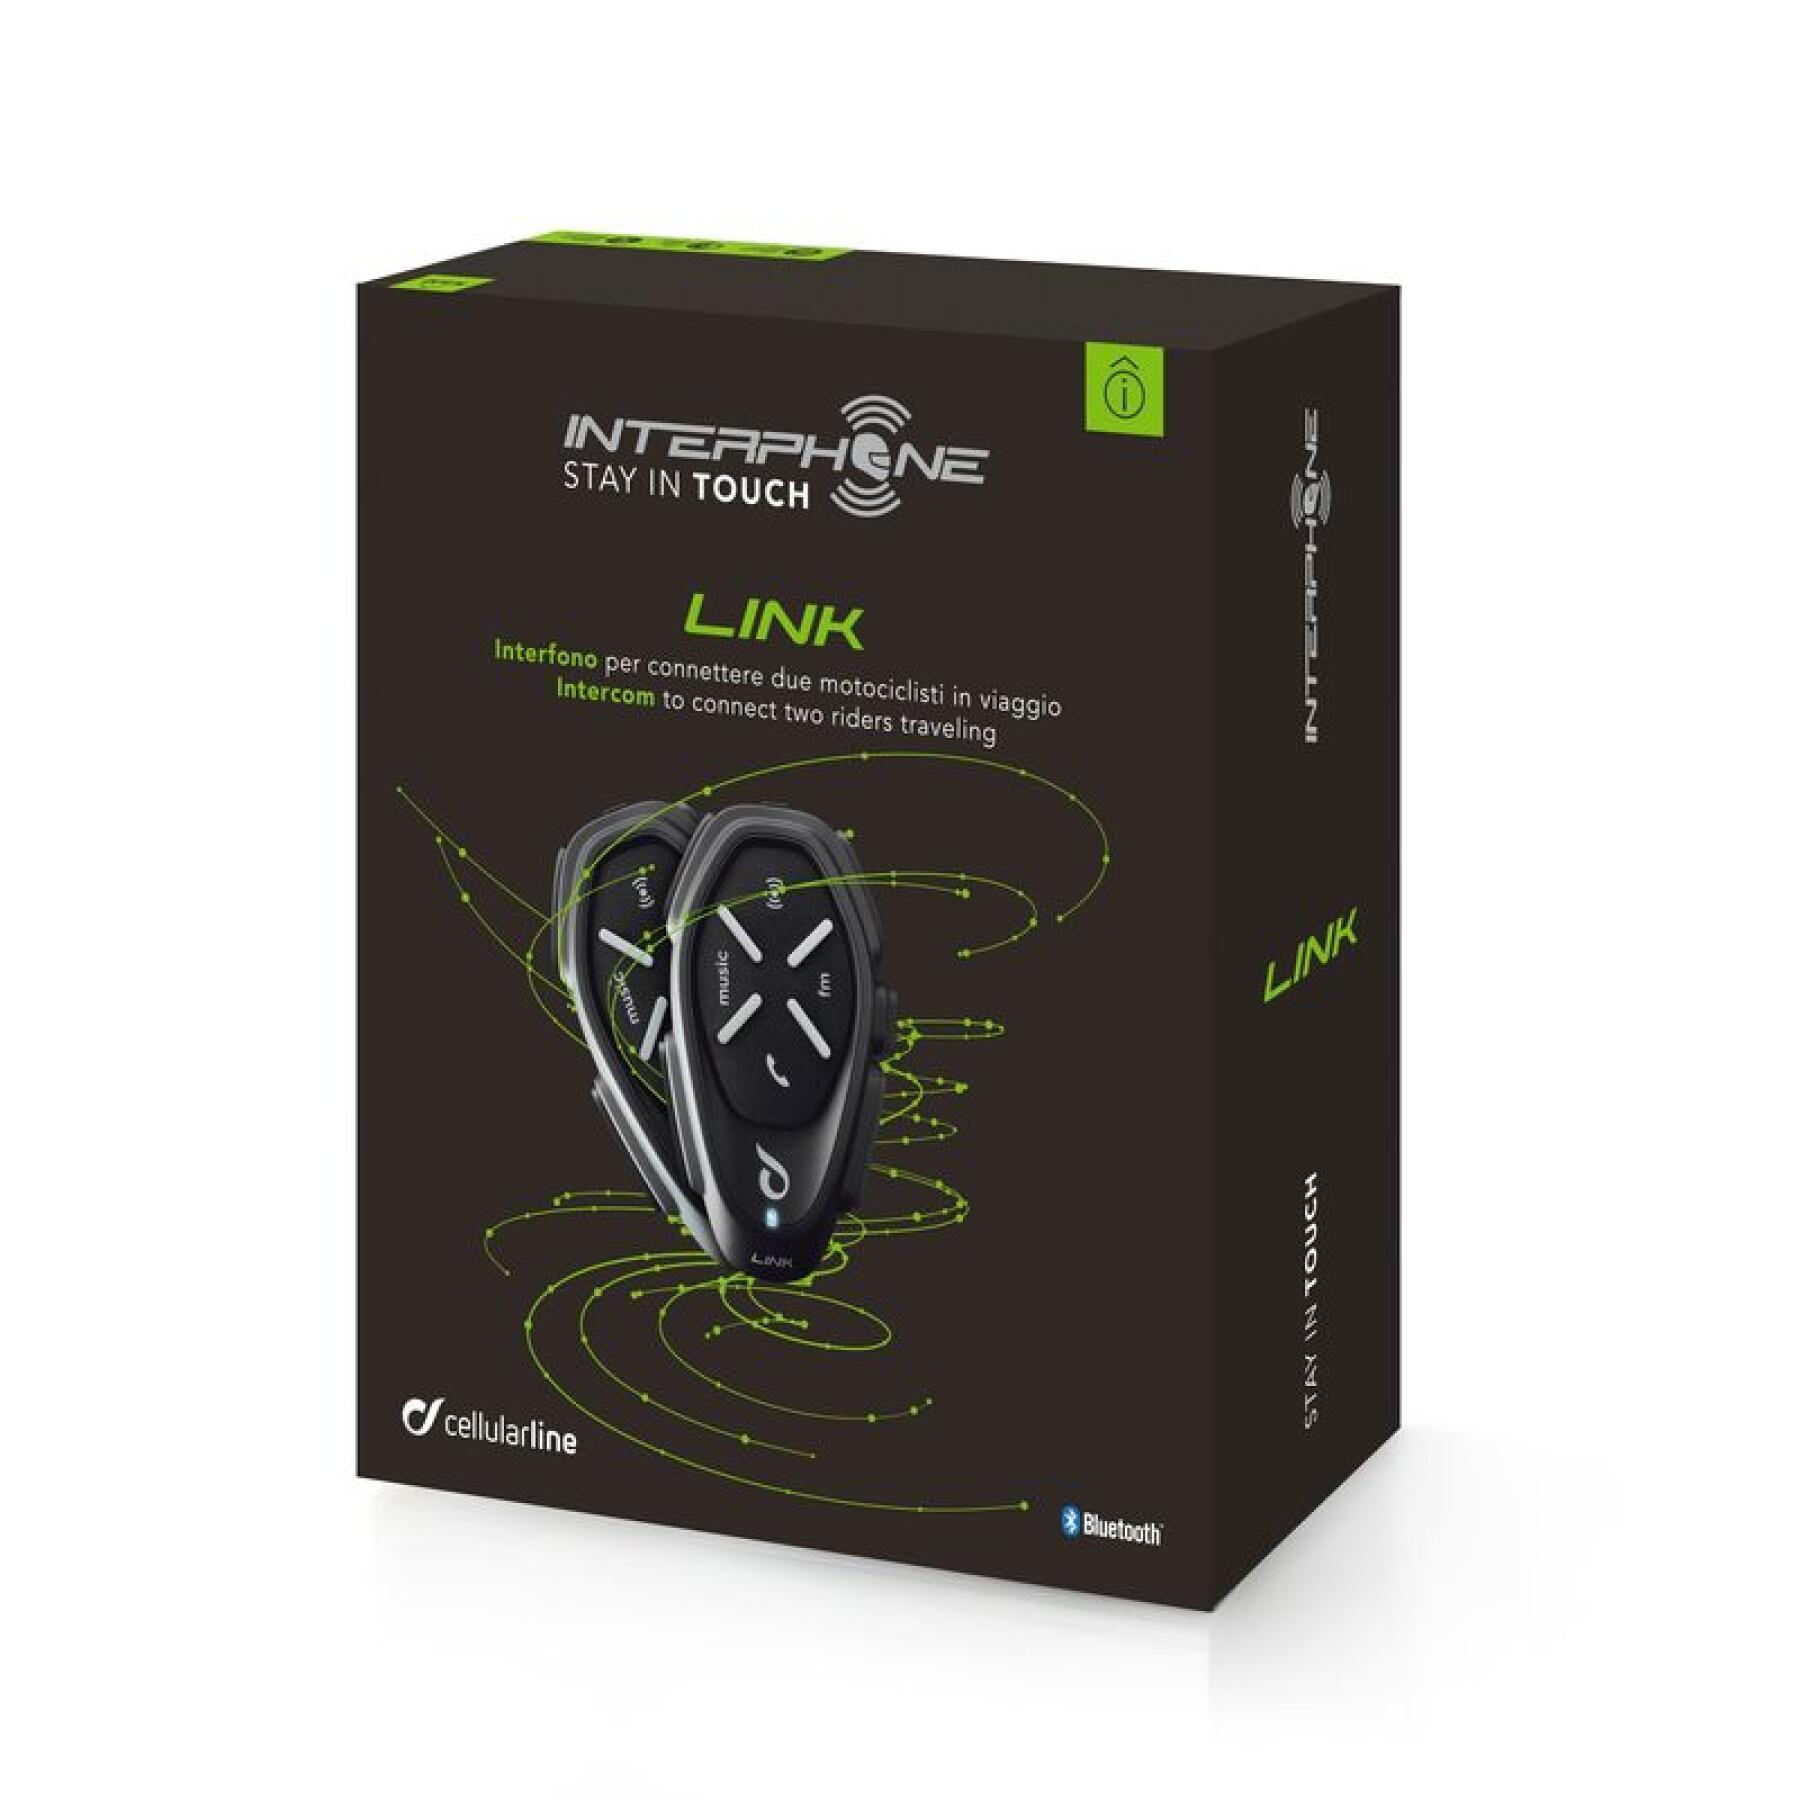 Interkom Cellularline LINK - Single Pack